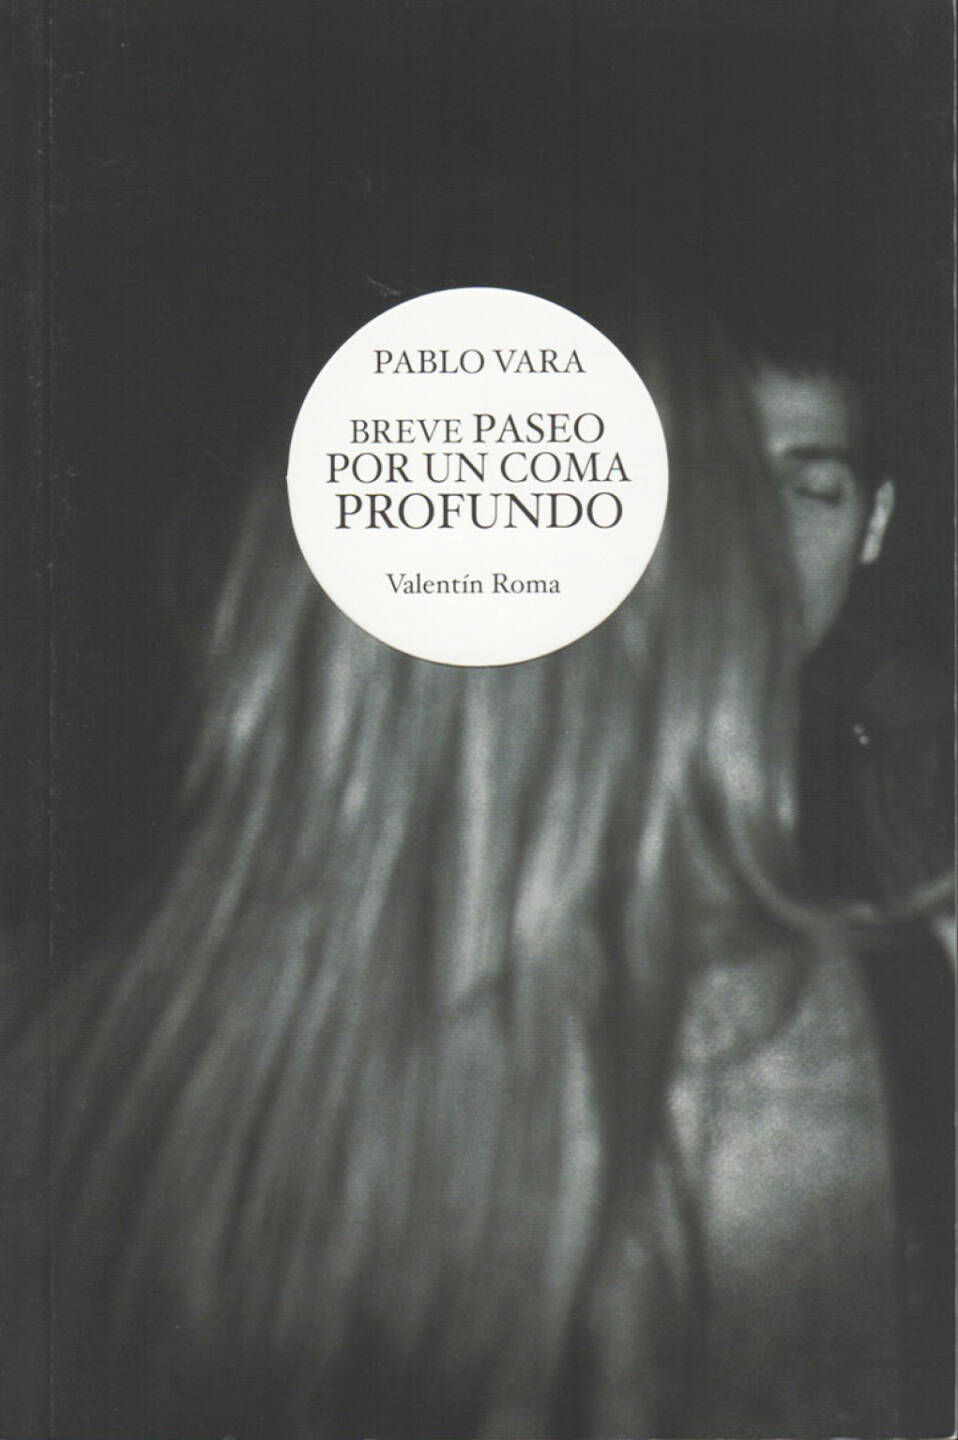 Pablo Vara - Breve Paseo por un Coma Profundo, Libreria Spagnola di Roma 2013, Cover - http://josefchladek.com/book/pablo_vara_-_breve_paseo_por_un_coma_profundo